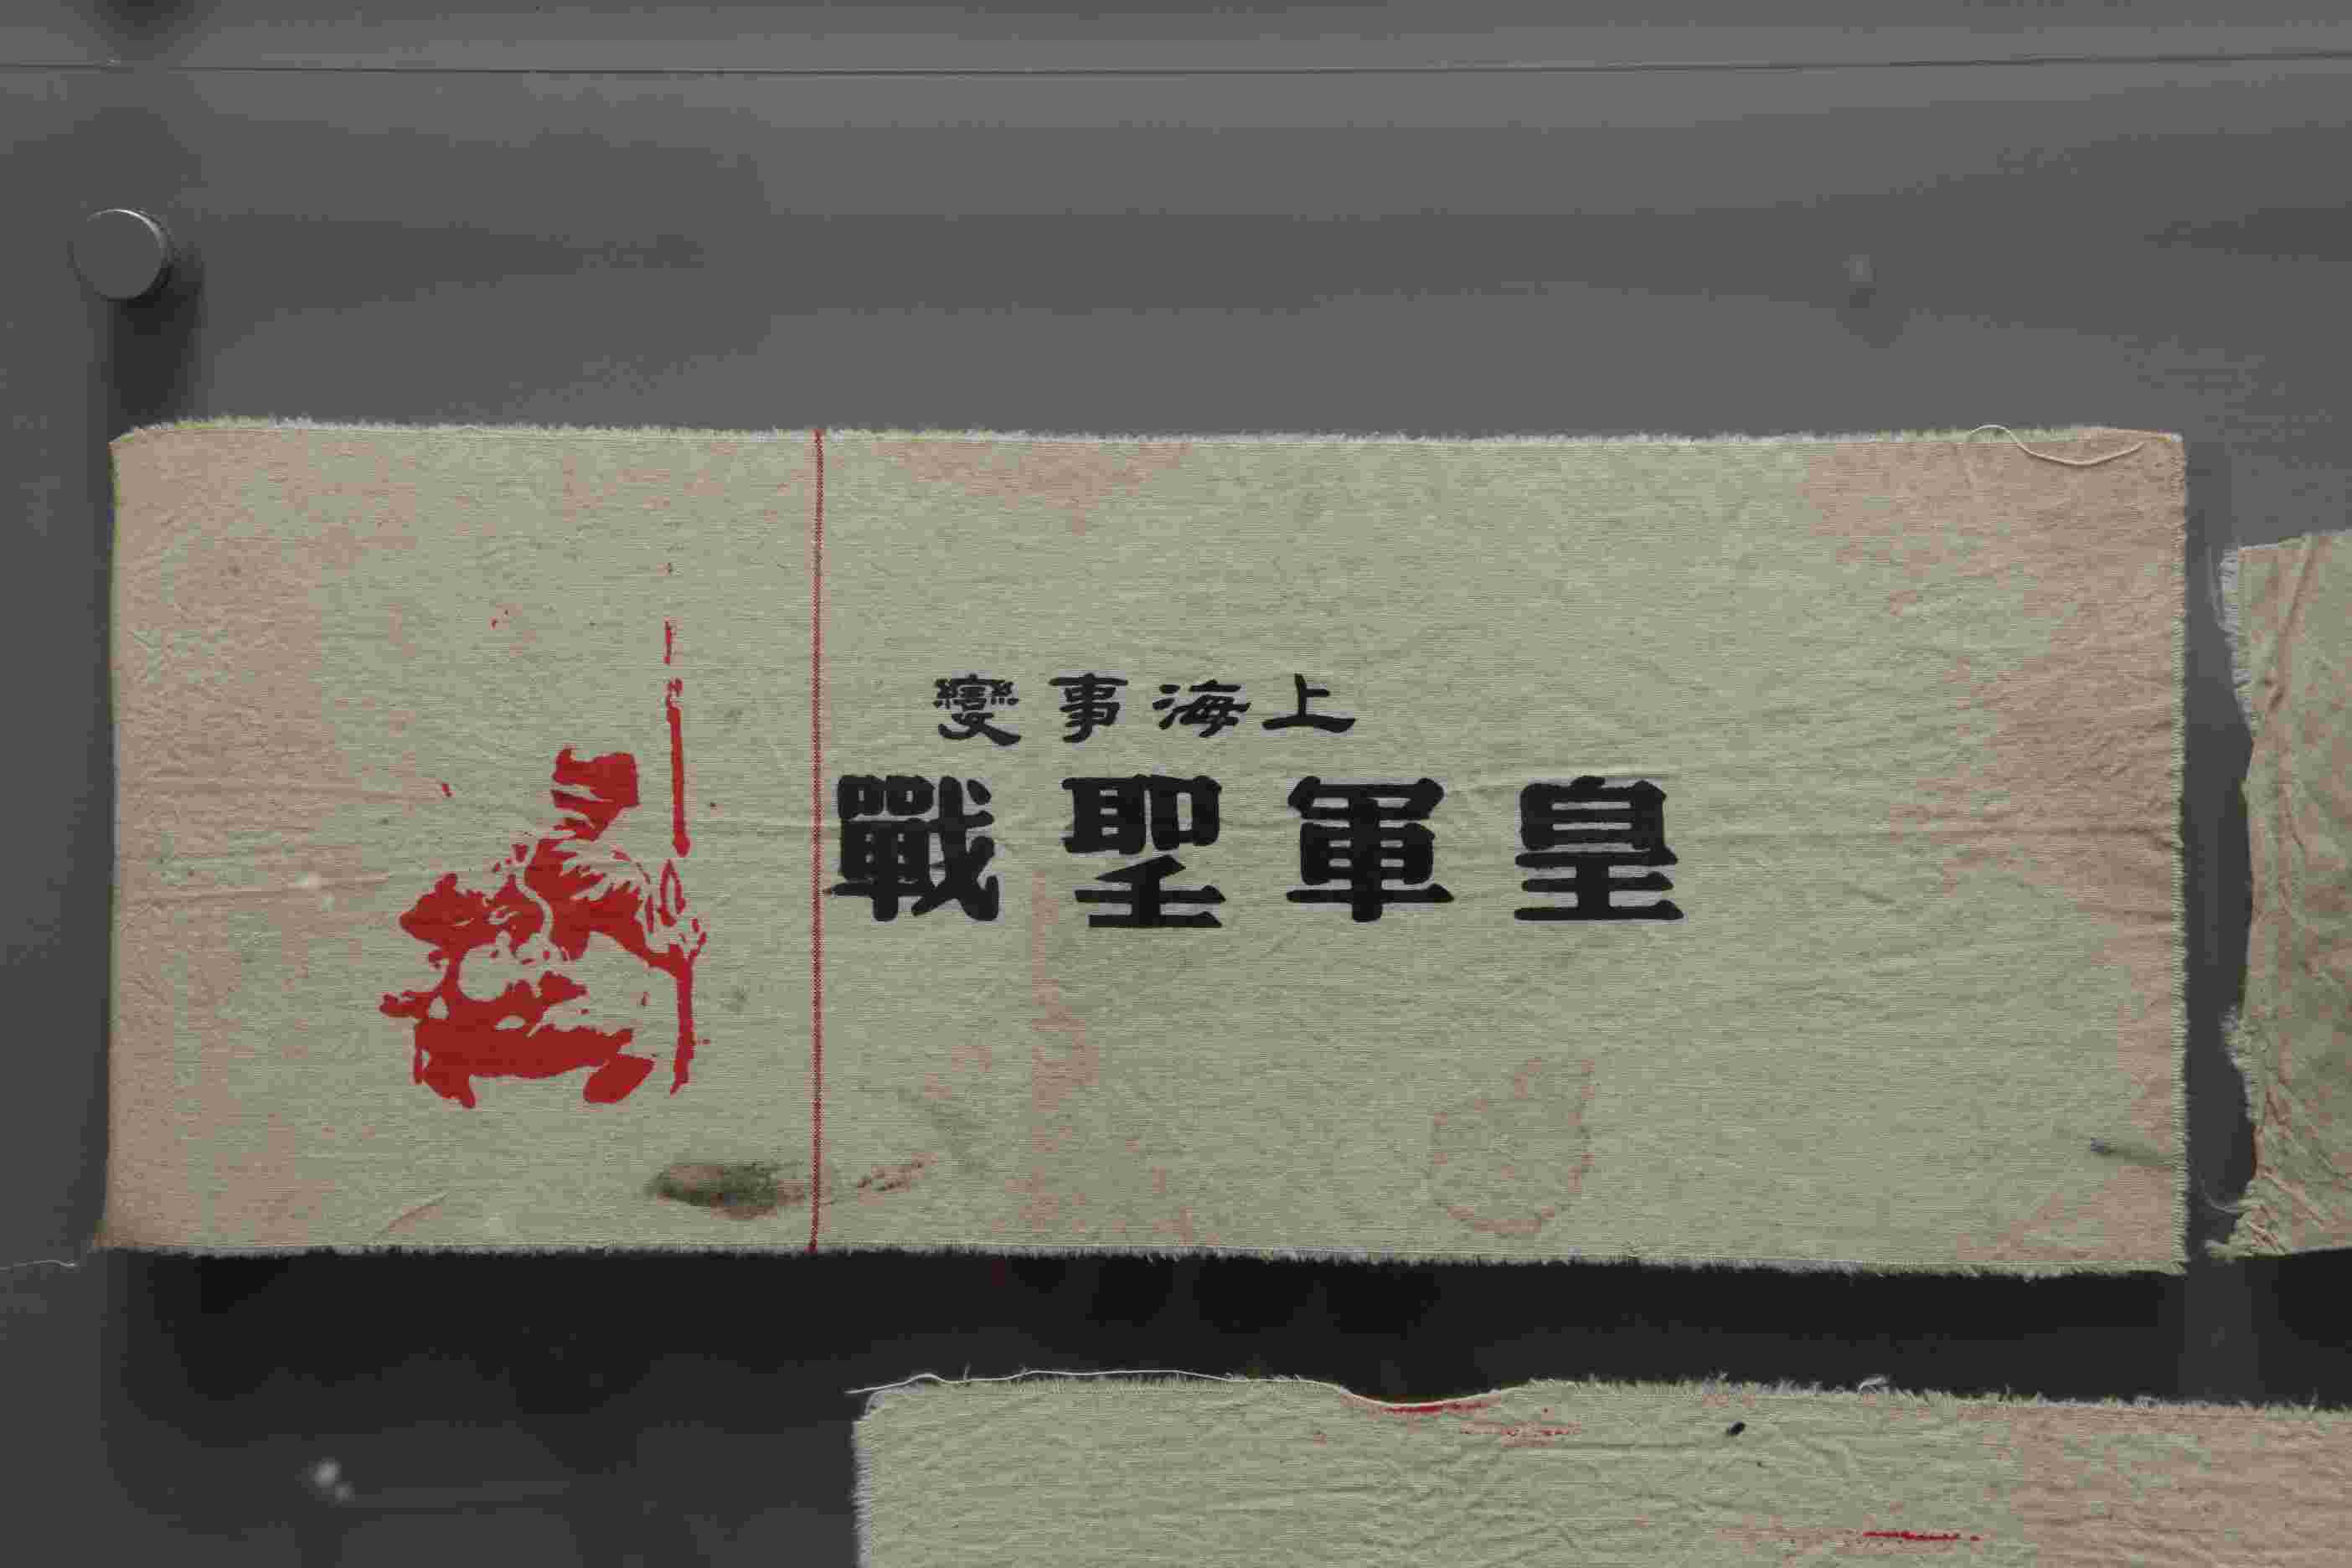 民国抗日战争时期日军“上海事变皇军圣战”棉布袖标